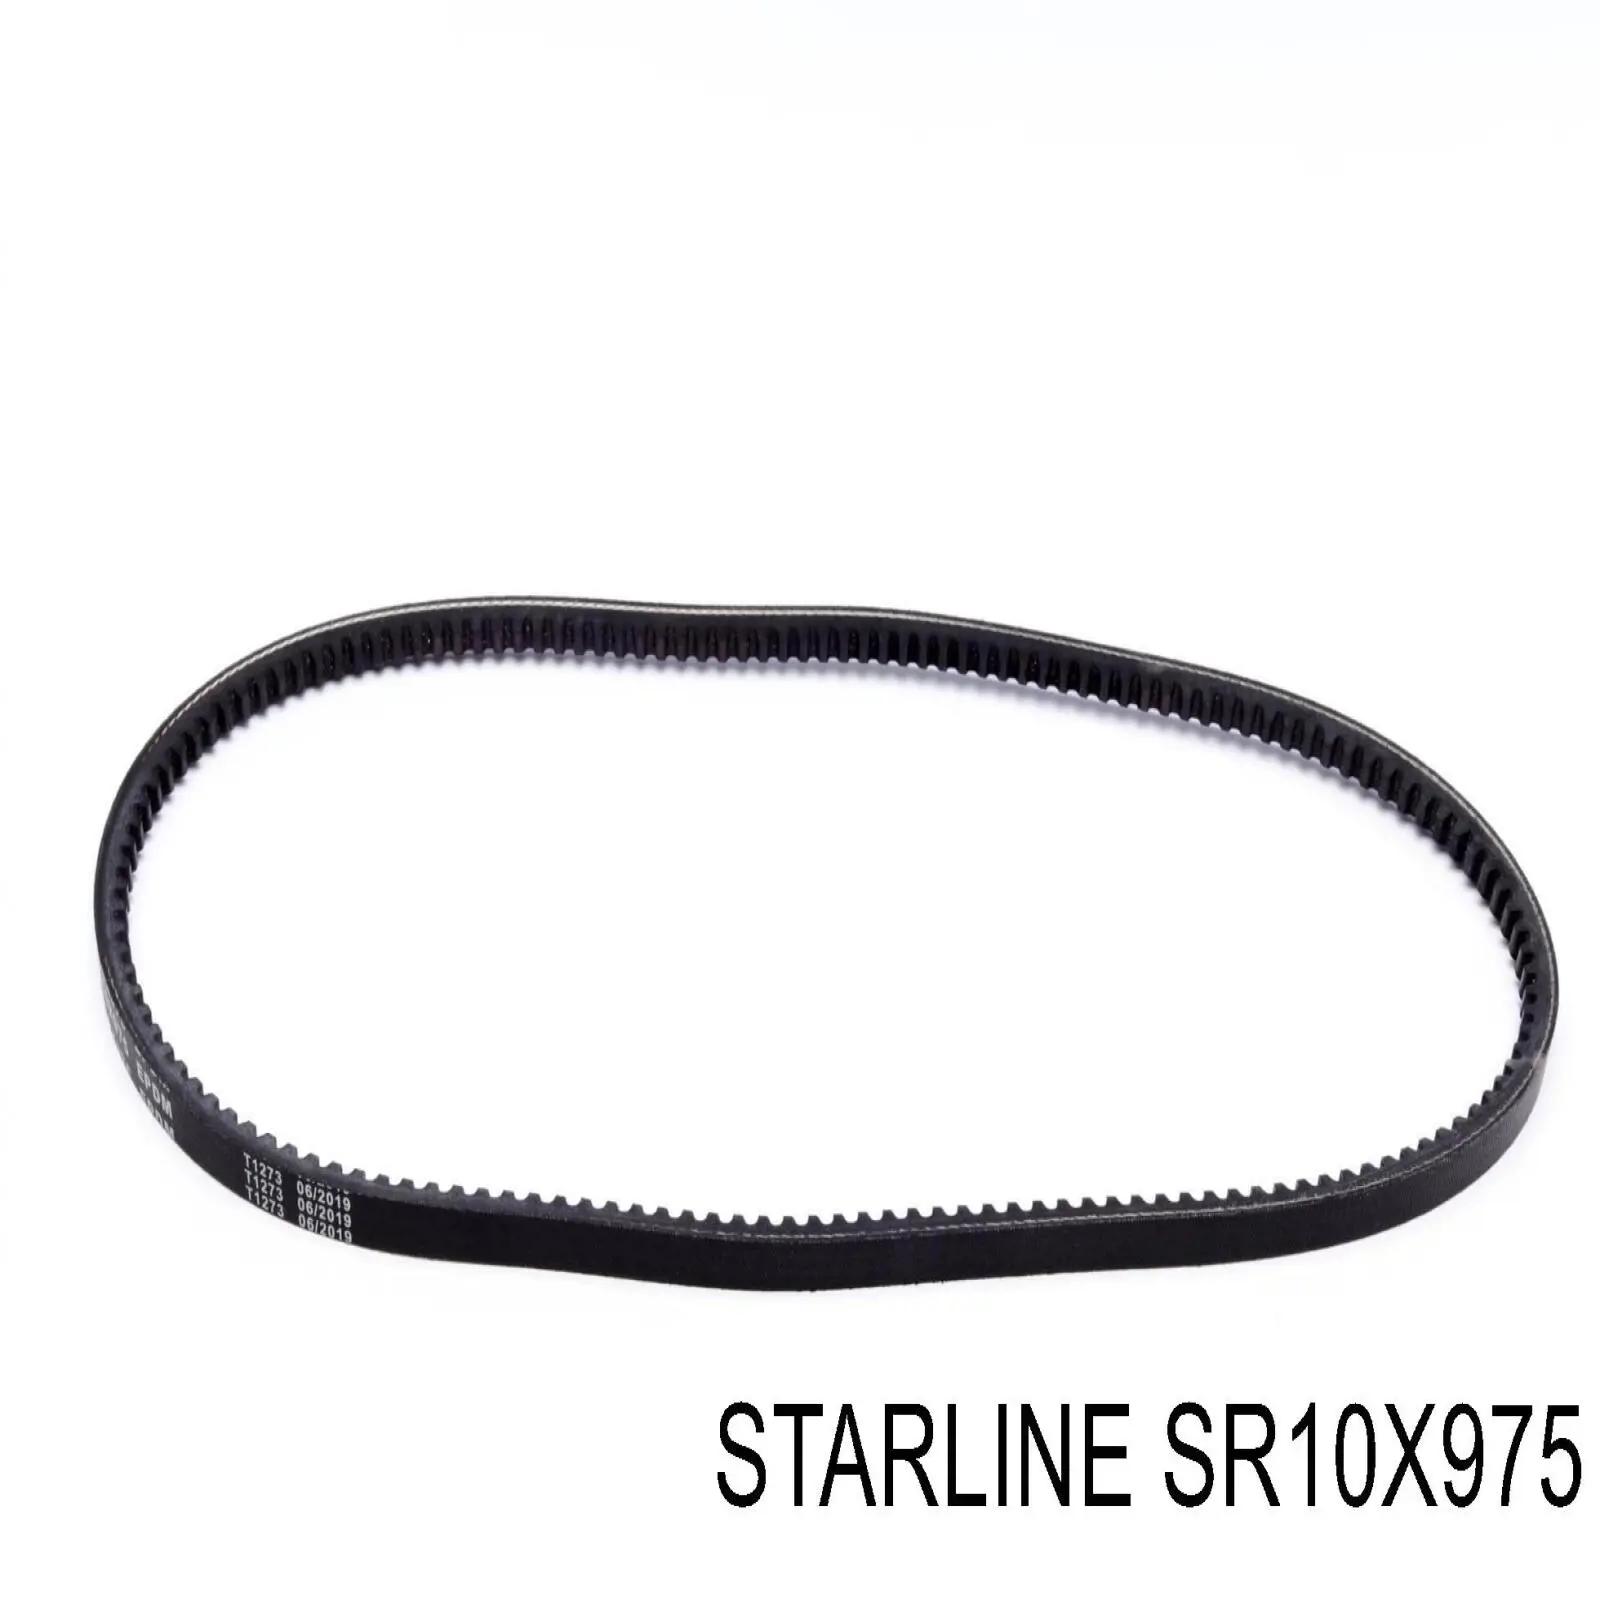 SR10X975 Starline correa trapezoidal